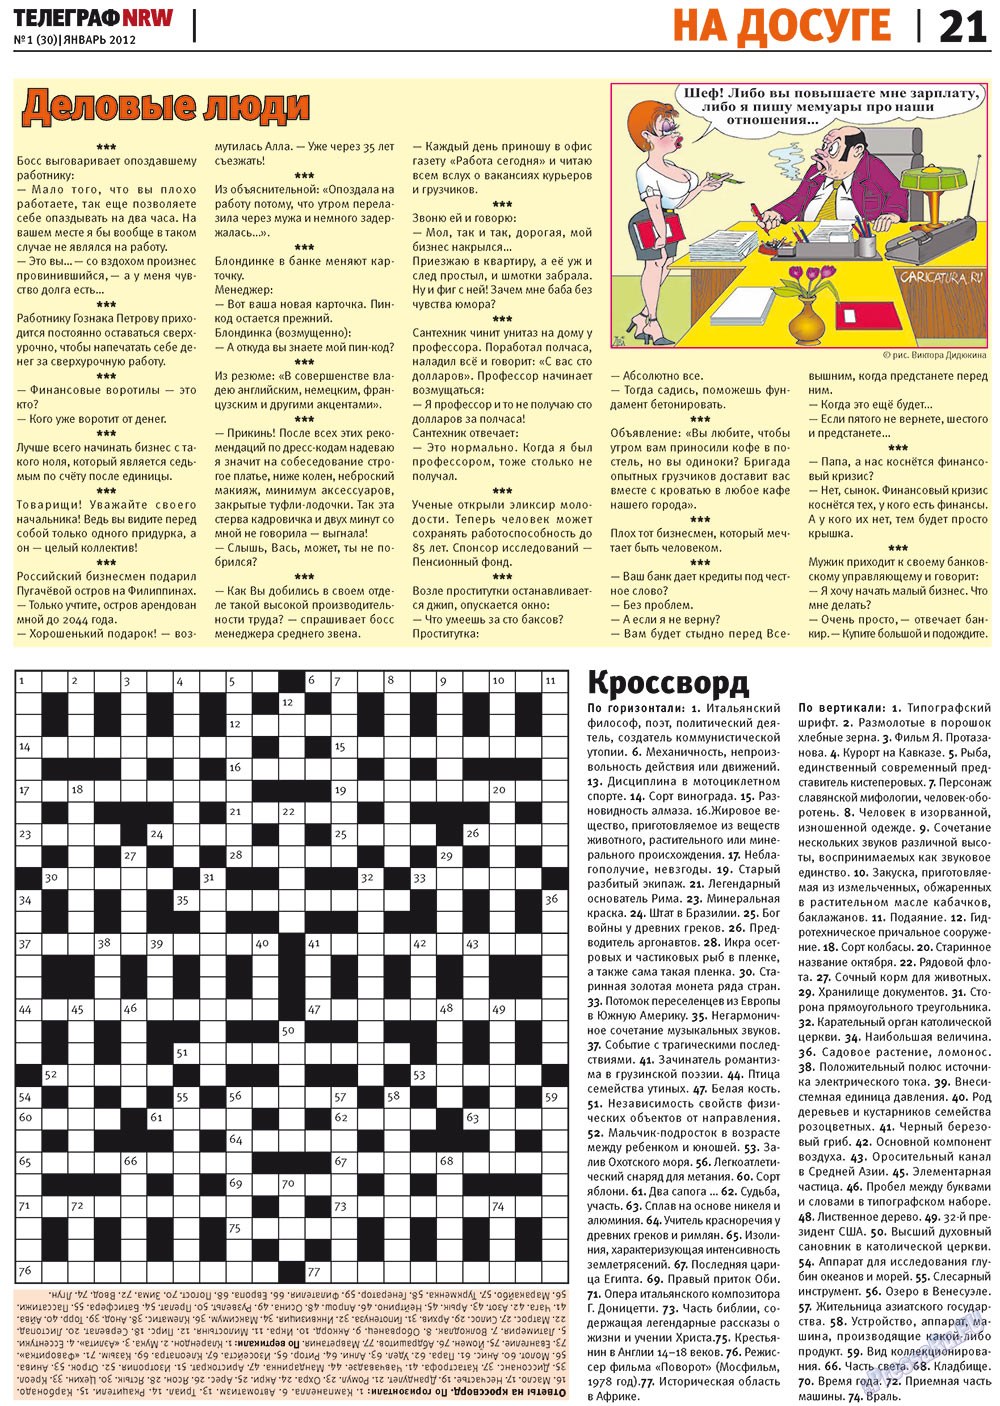 Телеграф NRW (газета). 2012 год, номер 1, стр. 21